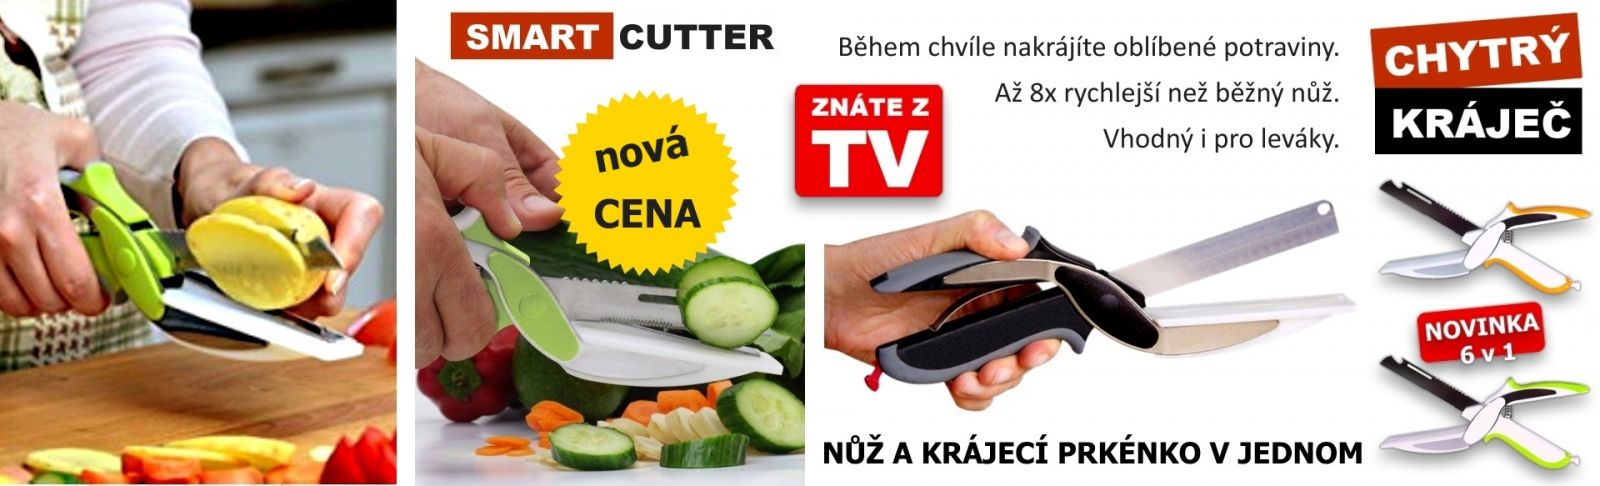 Multifunkční nůžky do kuchyně 6v1 clever cutter